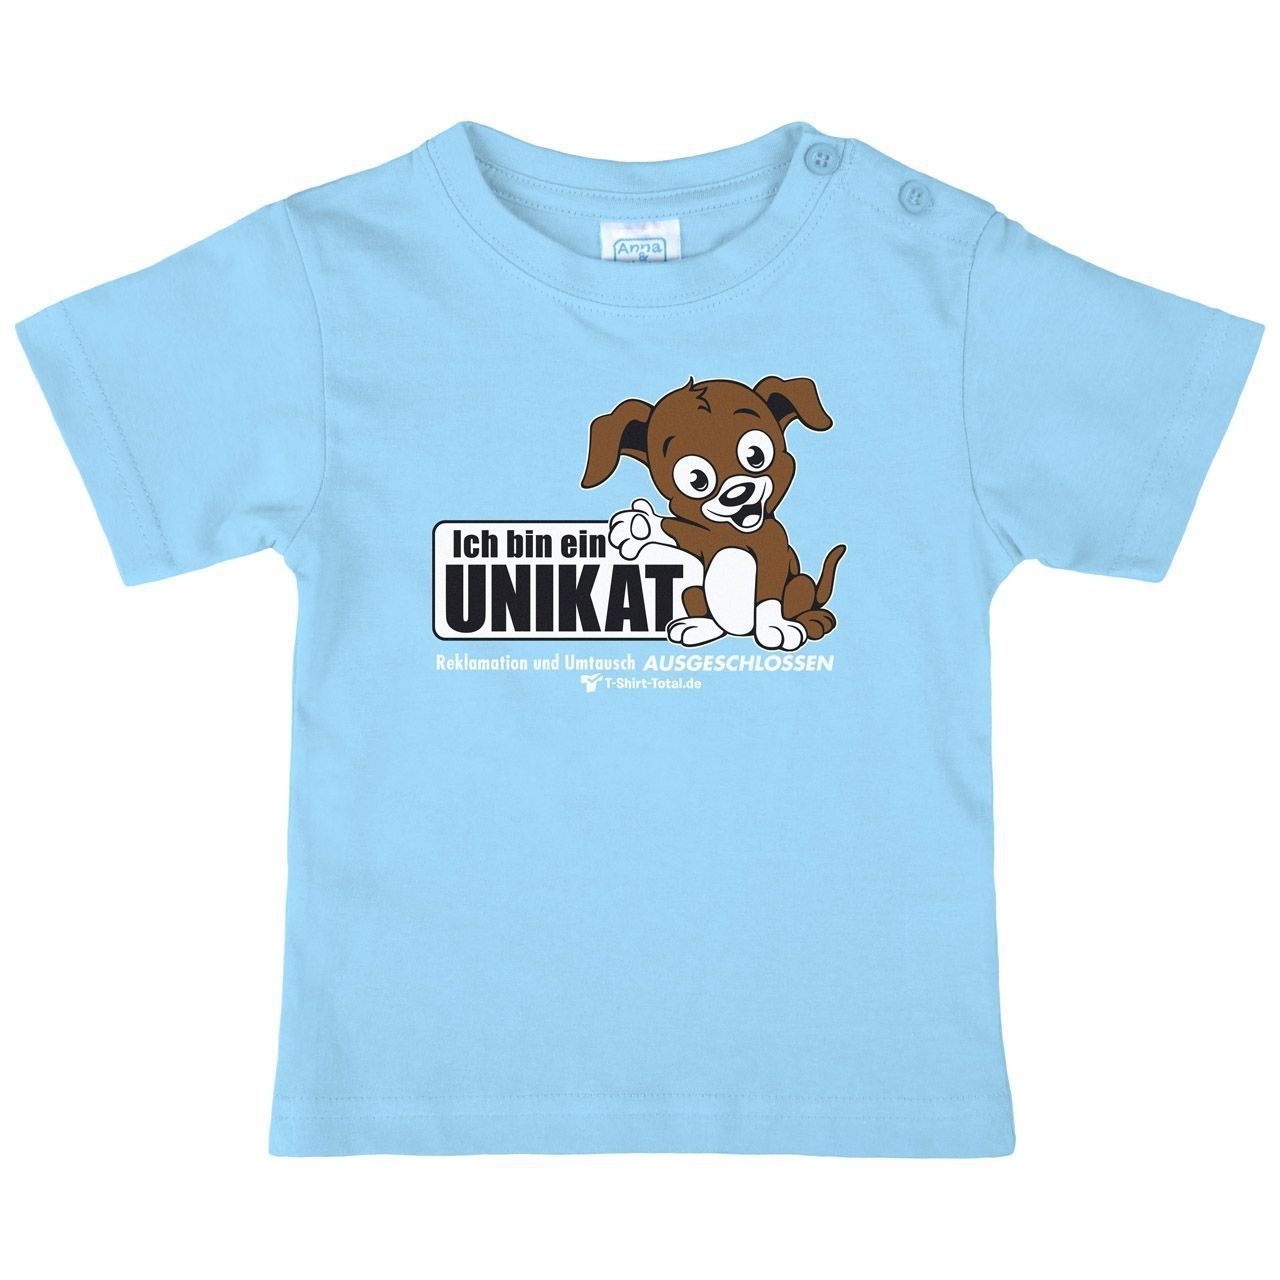 Unikat Kinder T-Shirt hellblau 98